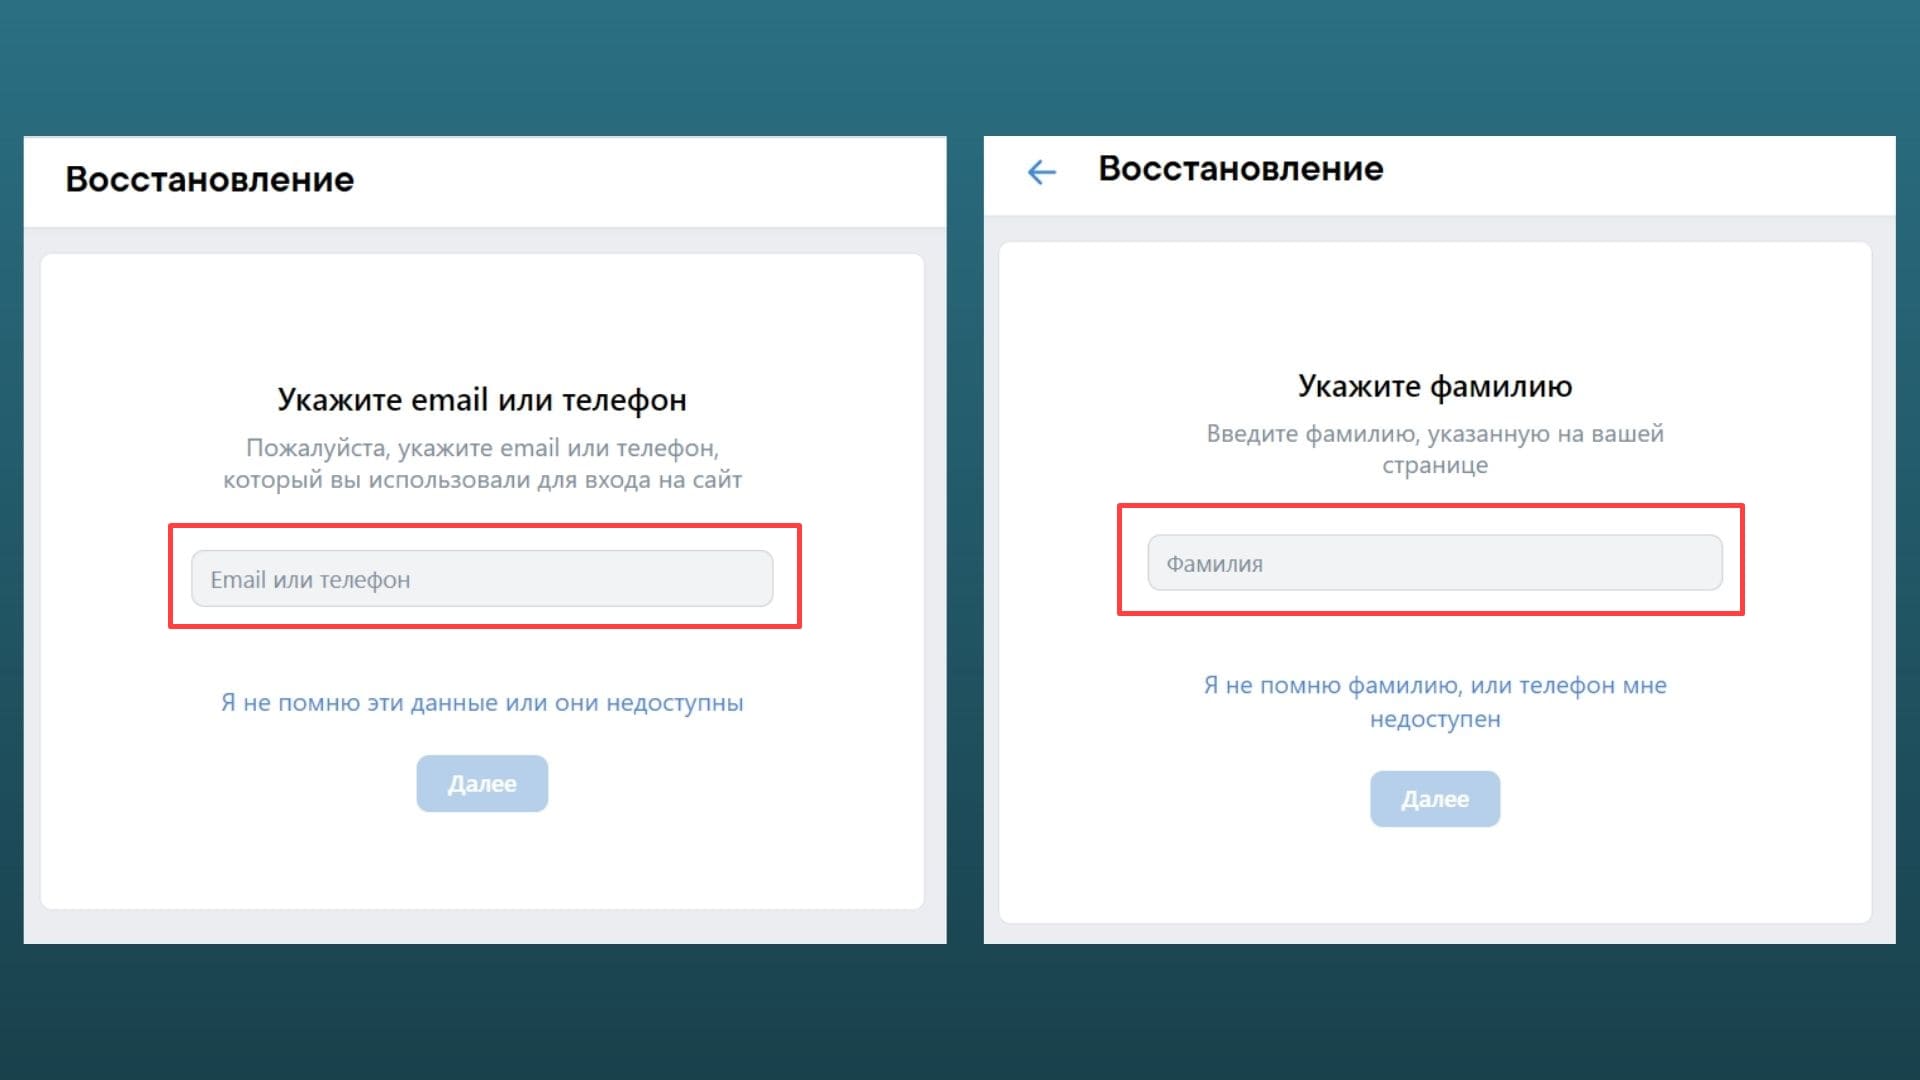 Способы восстановления аккаунта ВКонтакте